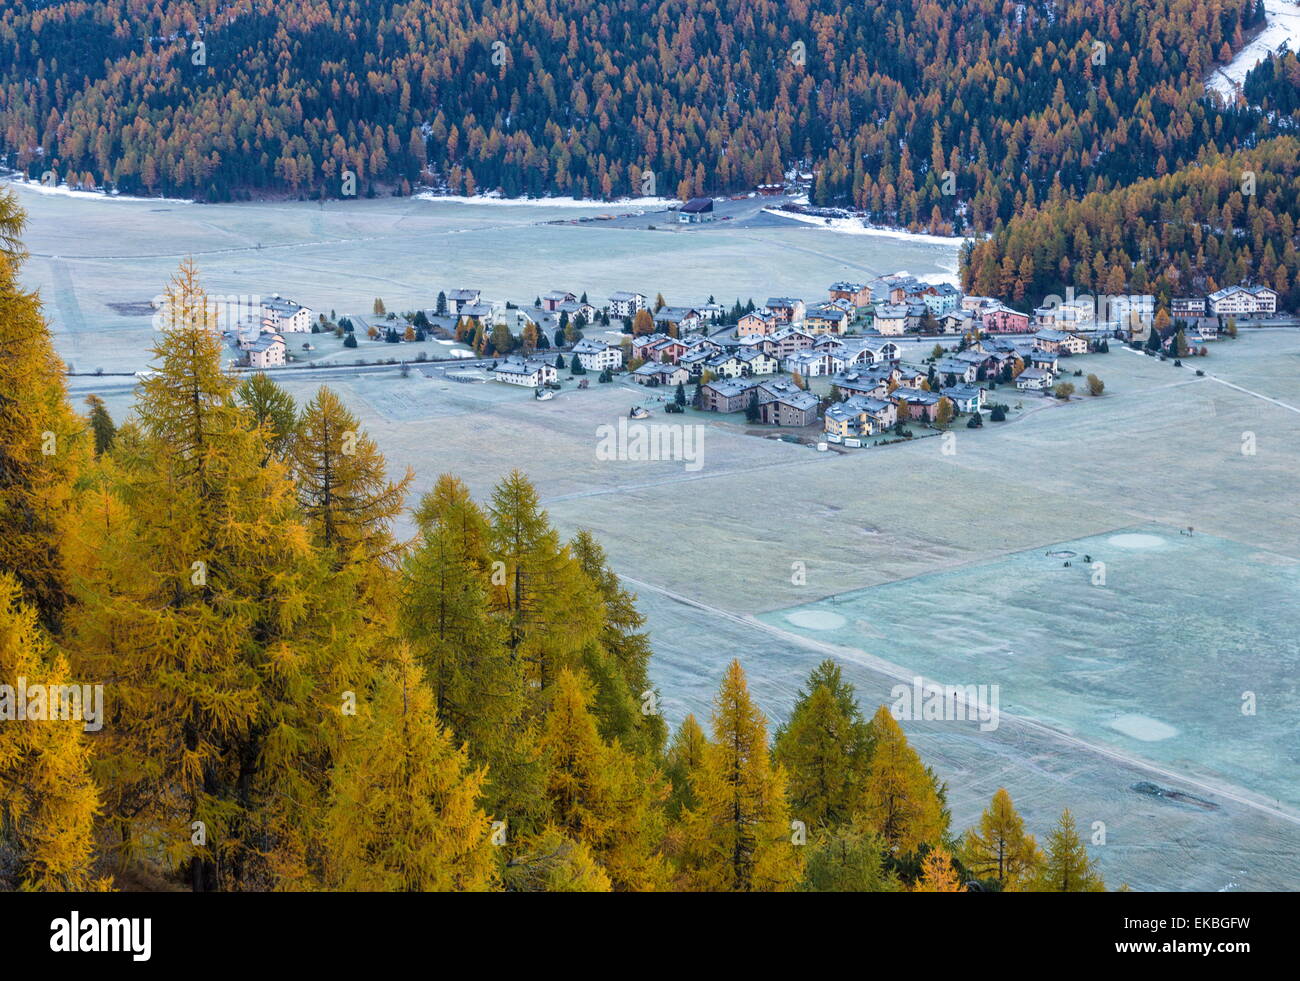 Das Dorf Surlej von St. Moritz im Engadin, umgeben von gelben Lärchen im Herbst, Graubünden, Schweizer Alpen, Schweiz Stockfoto